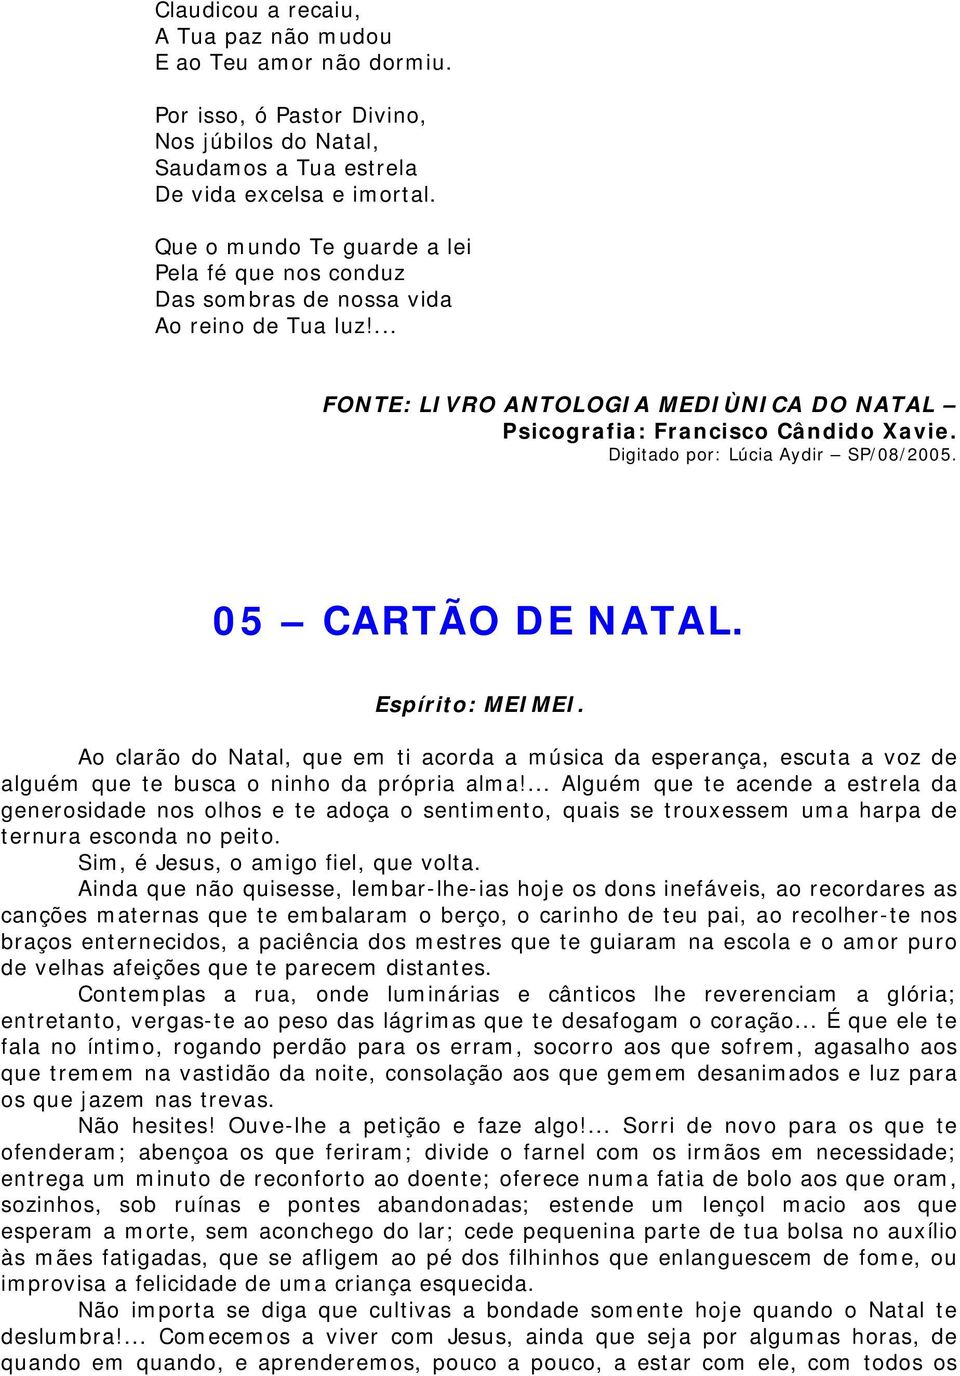 LIVRO ANTOLOGIA MEDIÚNICA DO NATAL ESPÍRITOS DIVERSOS - PDF Free Download